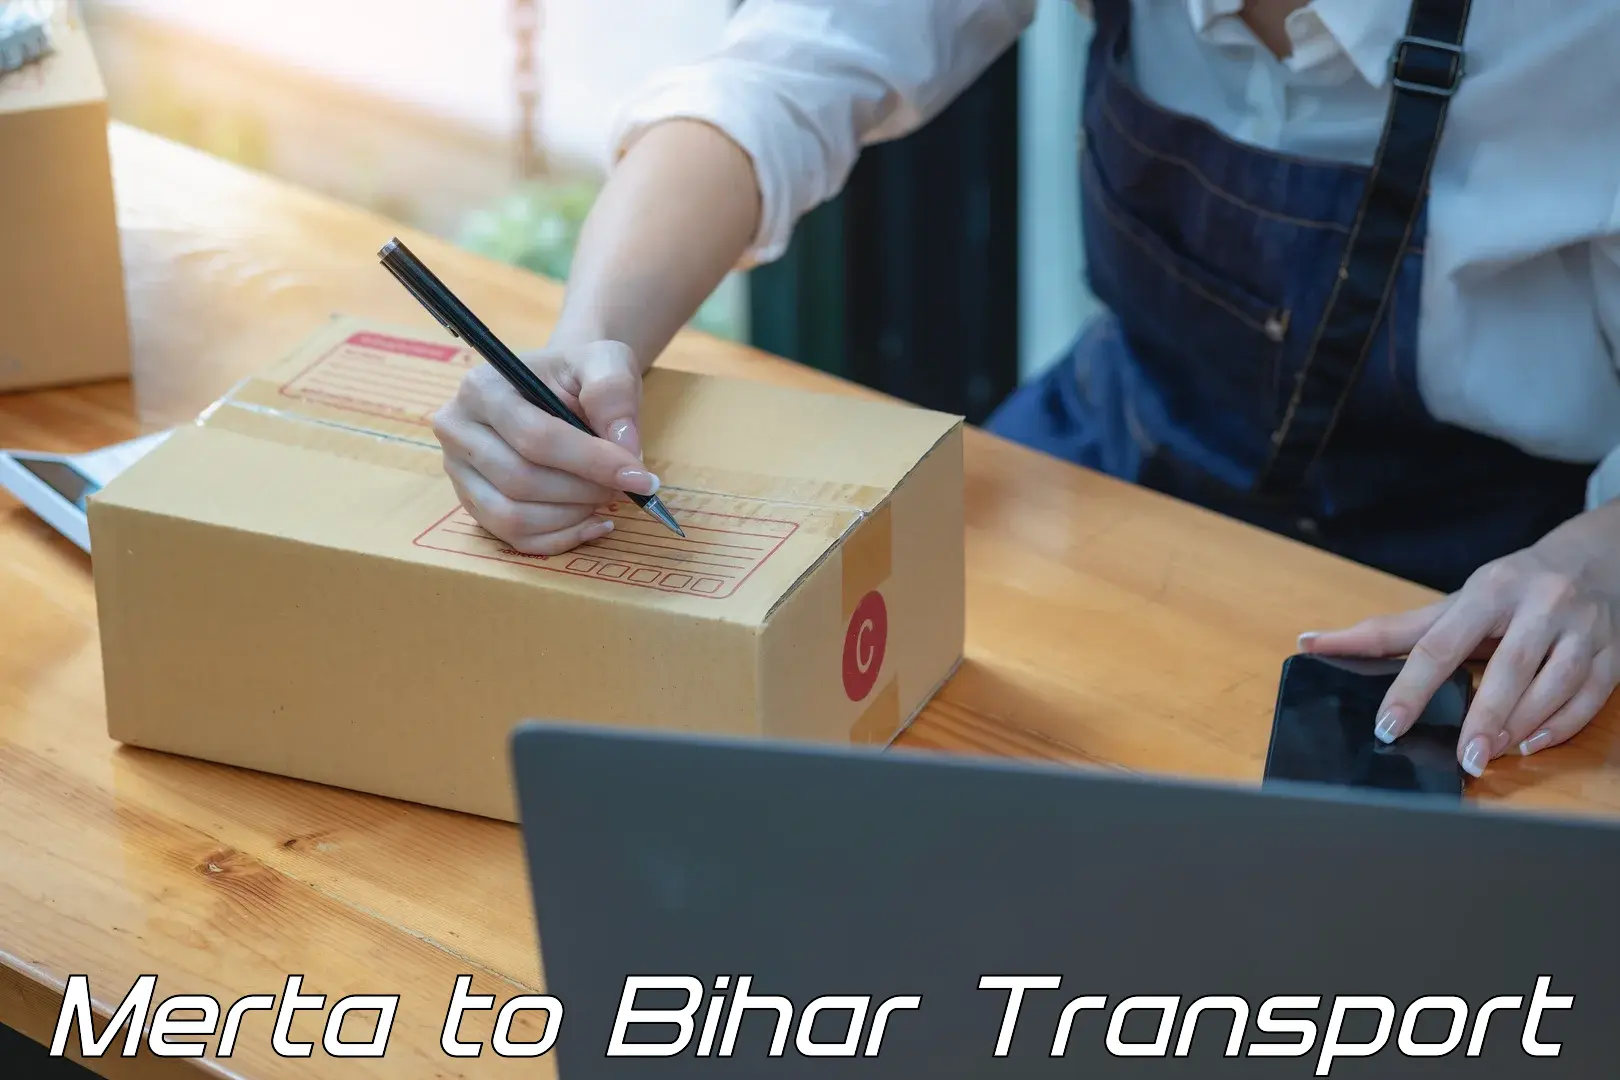 Online transport service Merta to Dehri